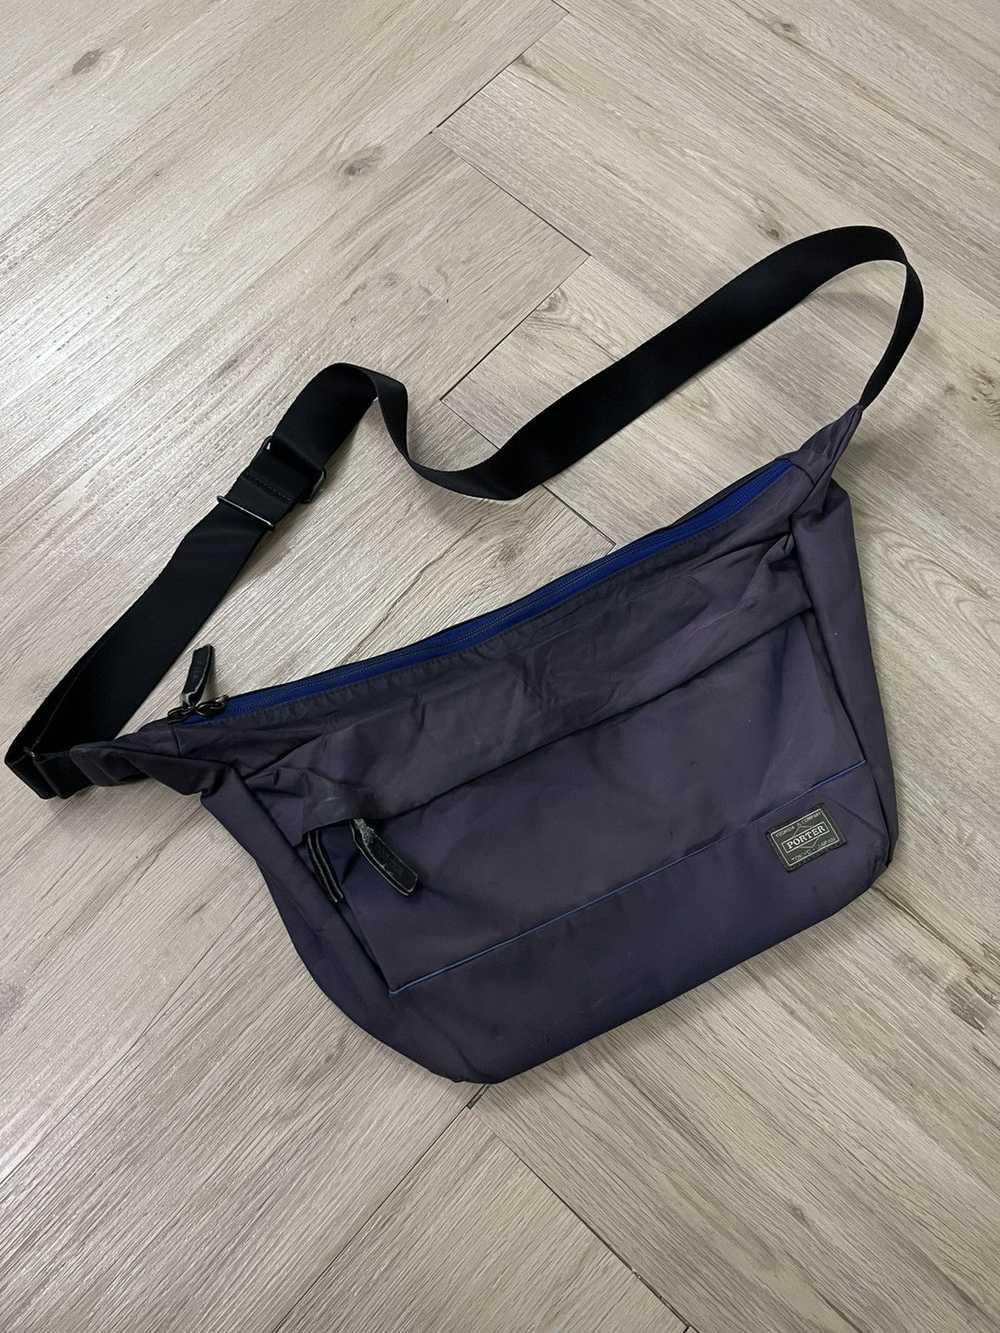 Japanese Brand × Porter Porter Sling Bag - image 1